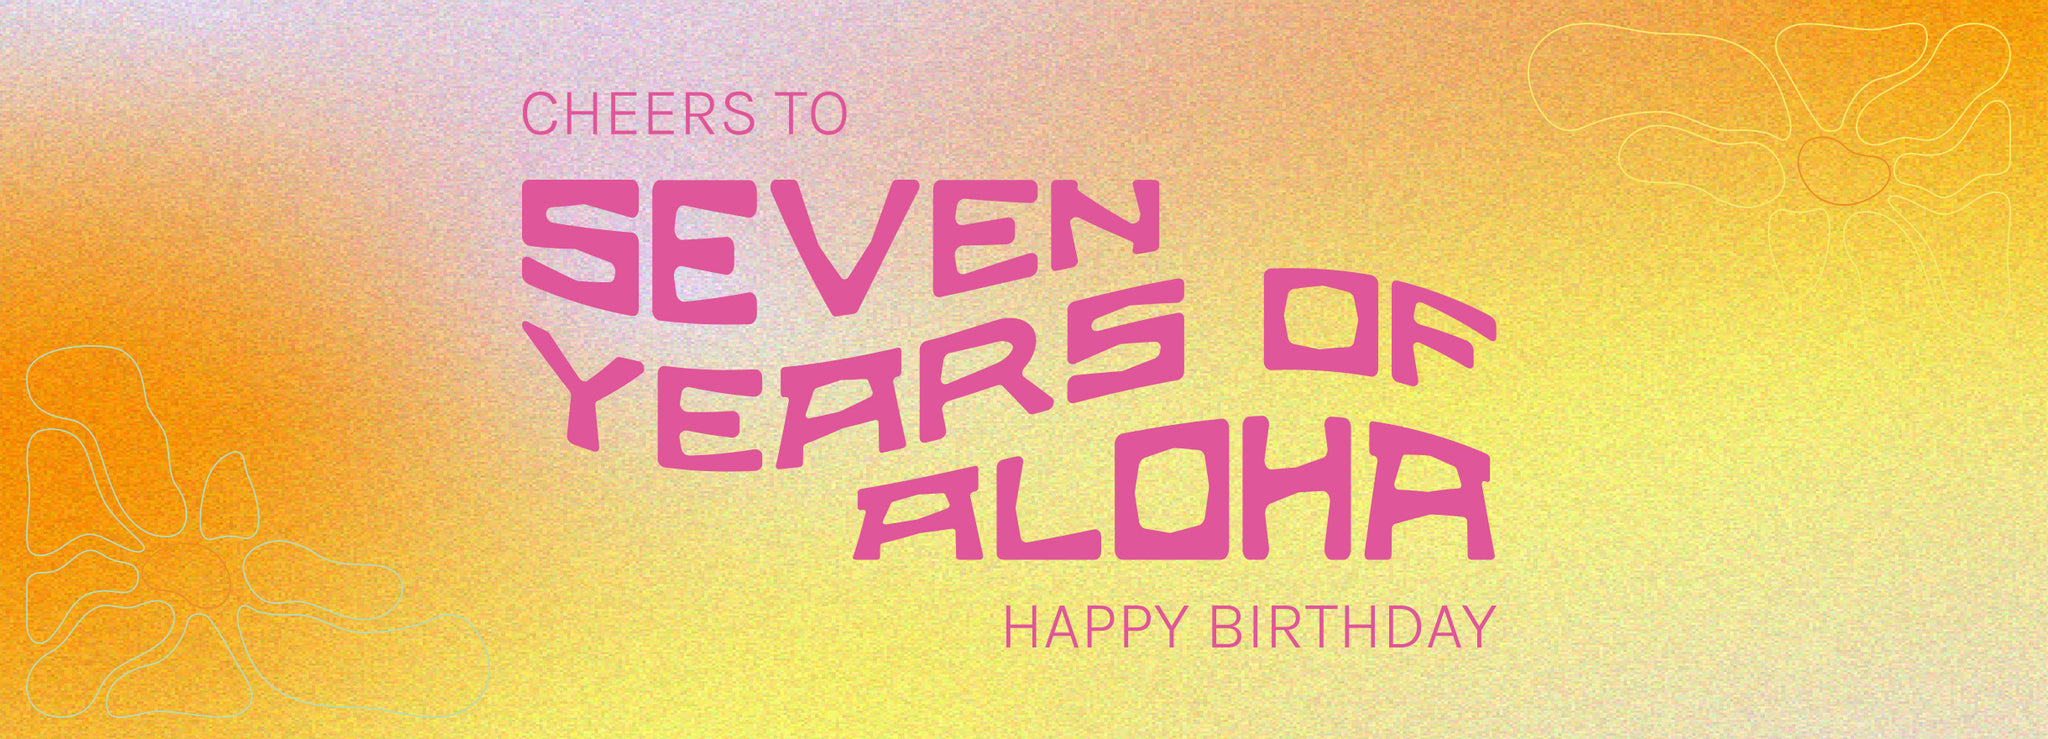 Feiere 7 Jahre voller Aloha und shoppe mit bis zu 50 % im Birthday Sale. Jetzt entdecken.